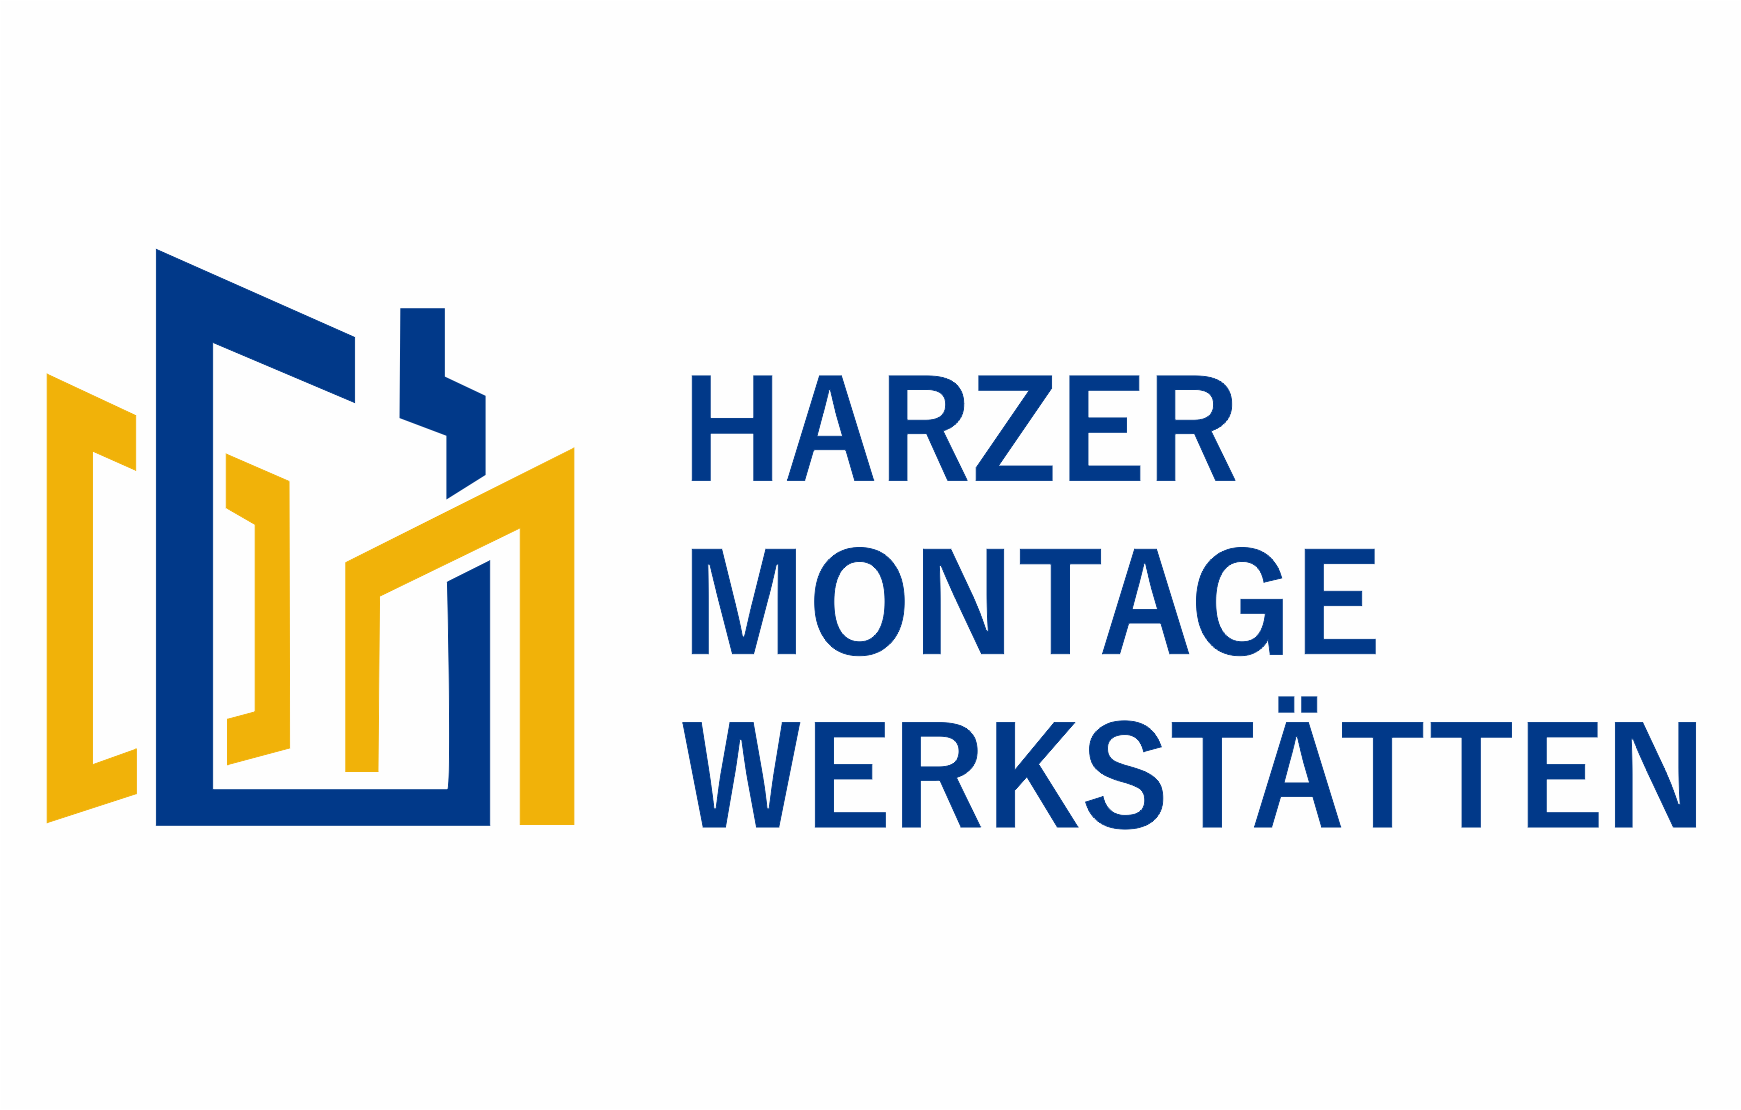 Harzer Montage Werkstätten by Sascha Kranga